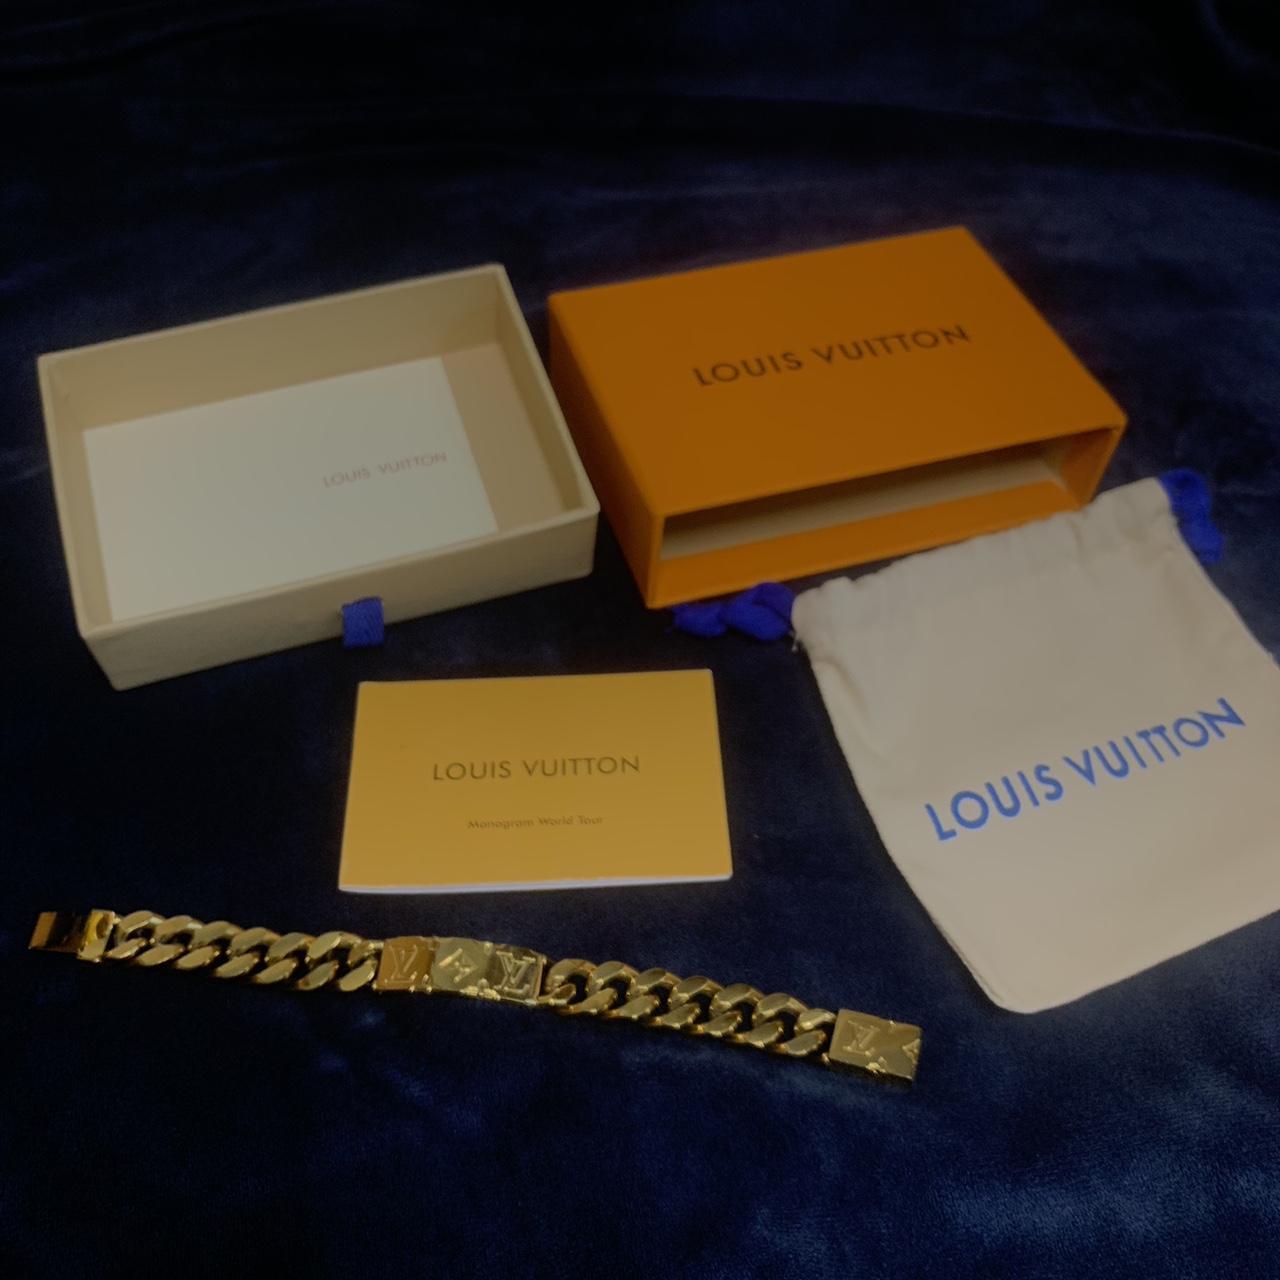 Louis Vuitton x NBA Bracelet Gold